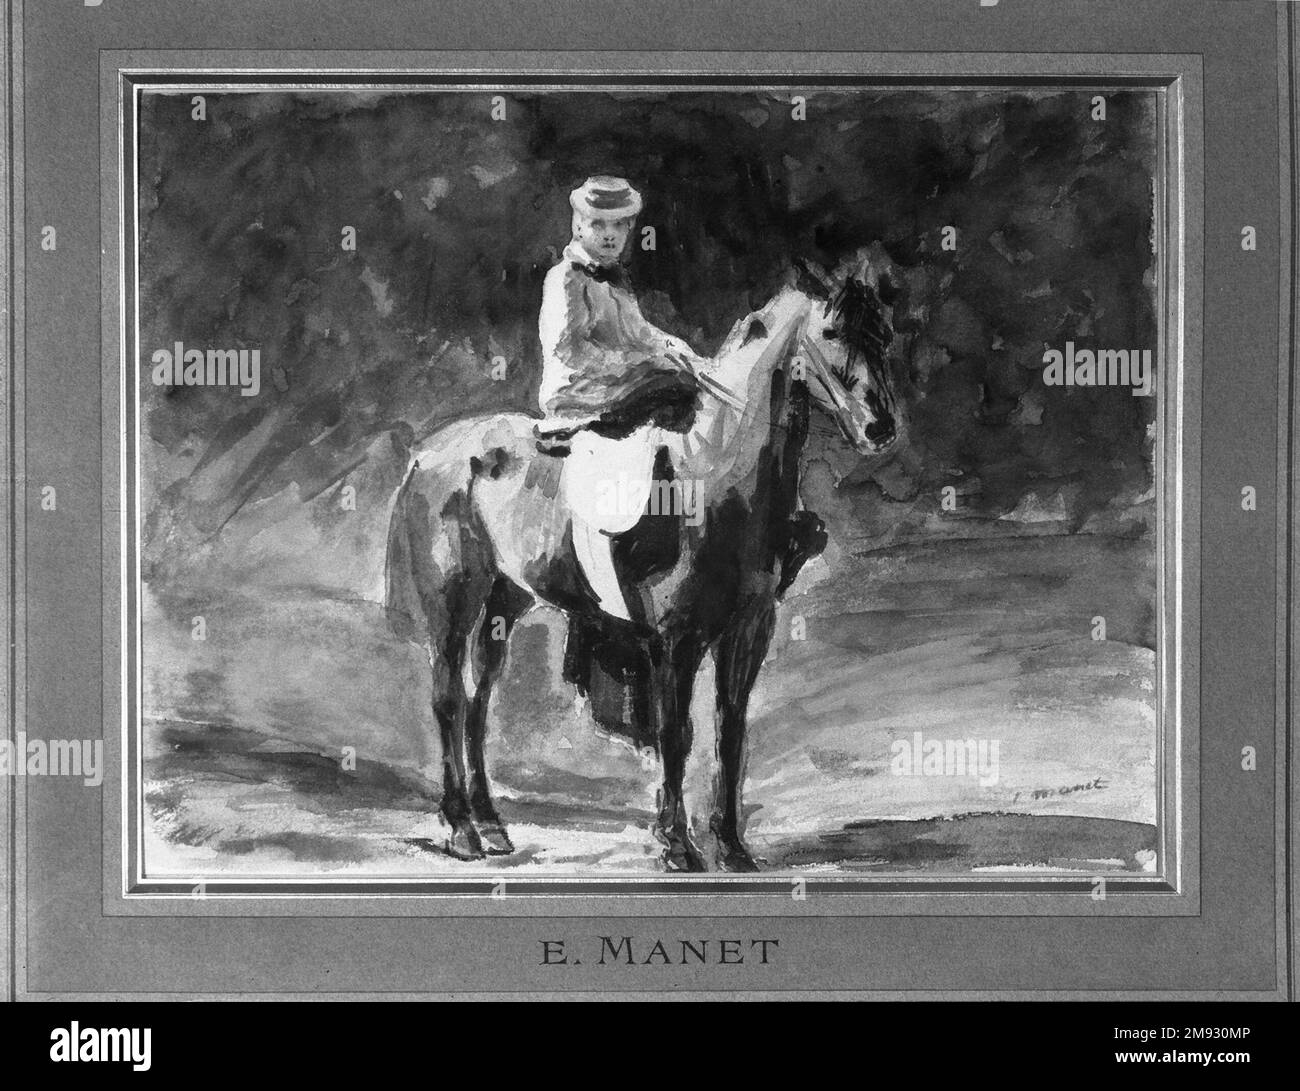 Equestrienne (L'Amazone) Edouard Manet (Französisch, 1832-1883). Die Reitstraße (L'Amazone), ca. 1875-1876. Aquarell und Graphit auf braunem gewebtem Papier, 8 3/16 x 10 5/8 cm (20,8 x 27 cm). In der Mitte des 19. Jahrhunderts bezog sich der Begriff erstaunlich verächtlich auf modische Pariser Frauen, die lieber reiten als in einer Kutsche und dabei elegante Kostüme trugen. Edouard Manet, ein engagierter Beobachter des Pariser Lebens, war besonders auf die Mode der Epoche eingestellt und nahm oft die Freizeitaktivitäten moderner städtischer Frauen zum Thema. In dieser Aquarelle benutzt er Stockfoto